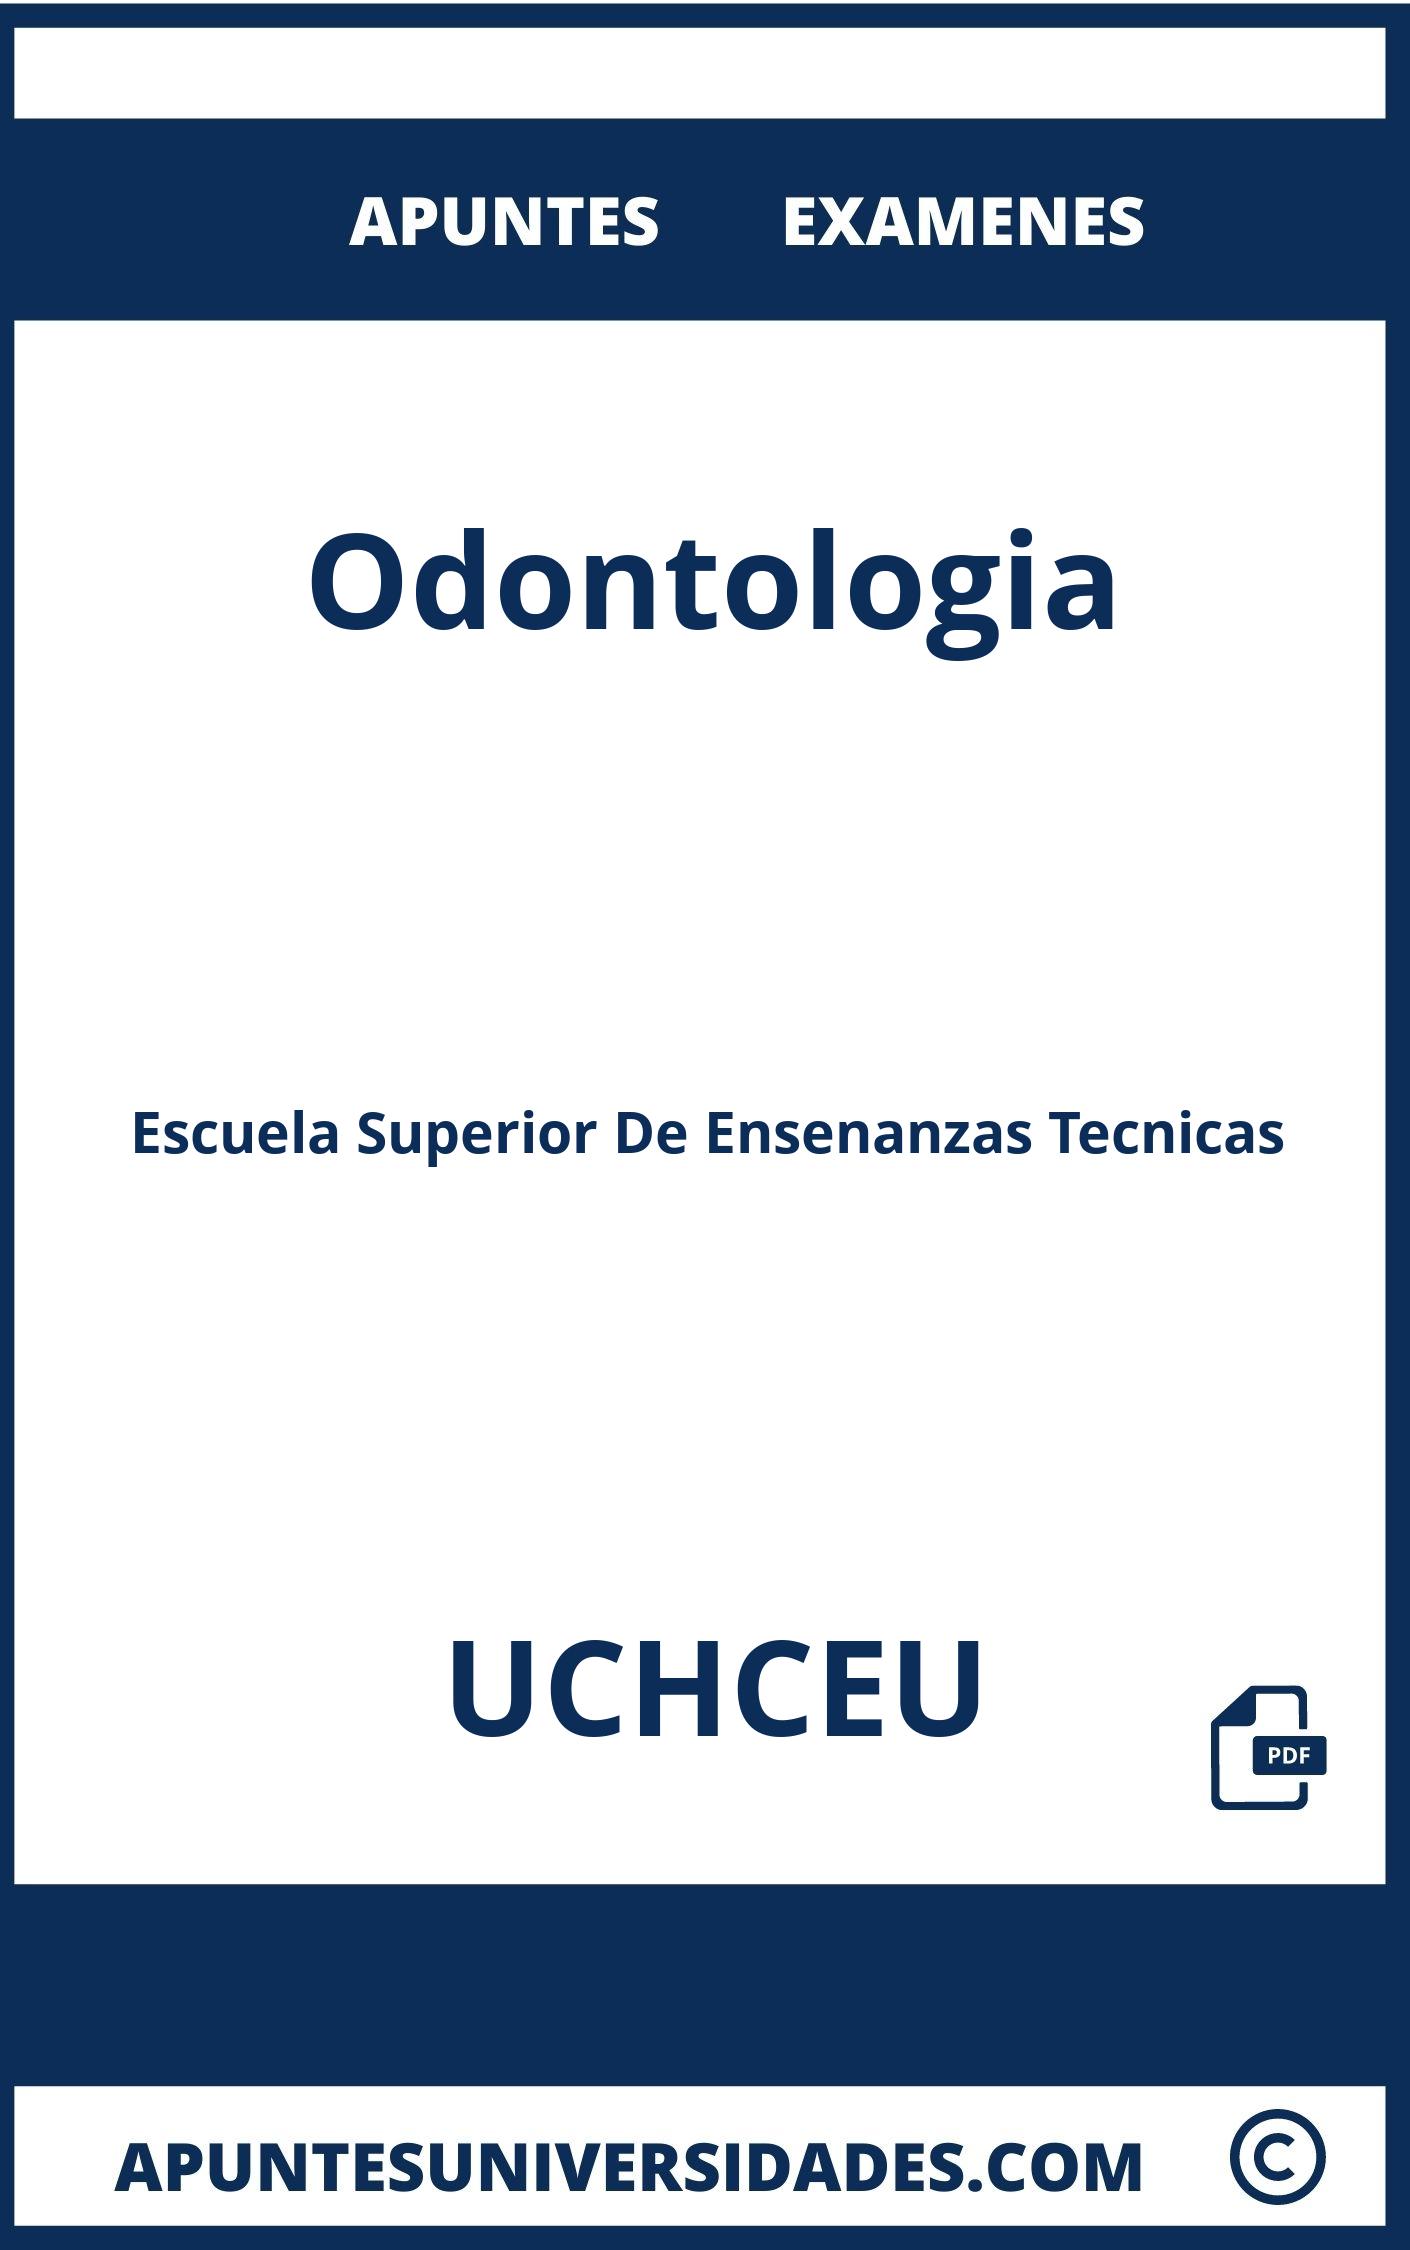 Examenes Odontologia UCHCEU y Apuntes